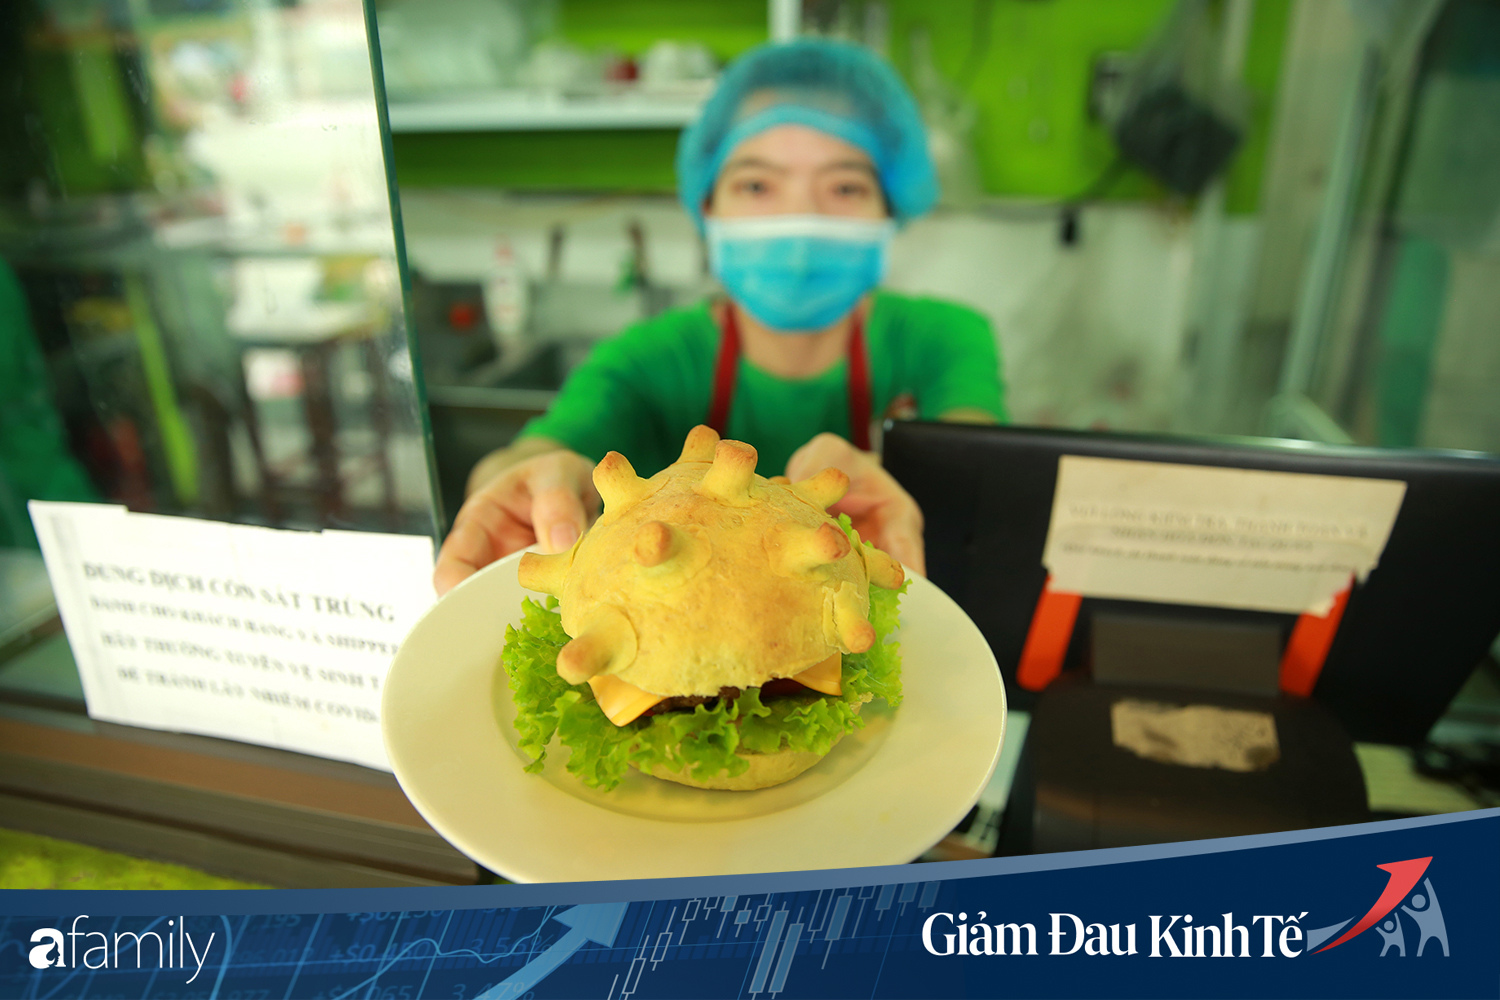 Chuyện lạ có thật ở Hà Nội: Cửa hàng làm bánh burger... corona nhằm truyền cảm hứng chống dịch - Ảnh 1.